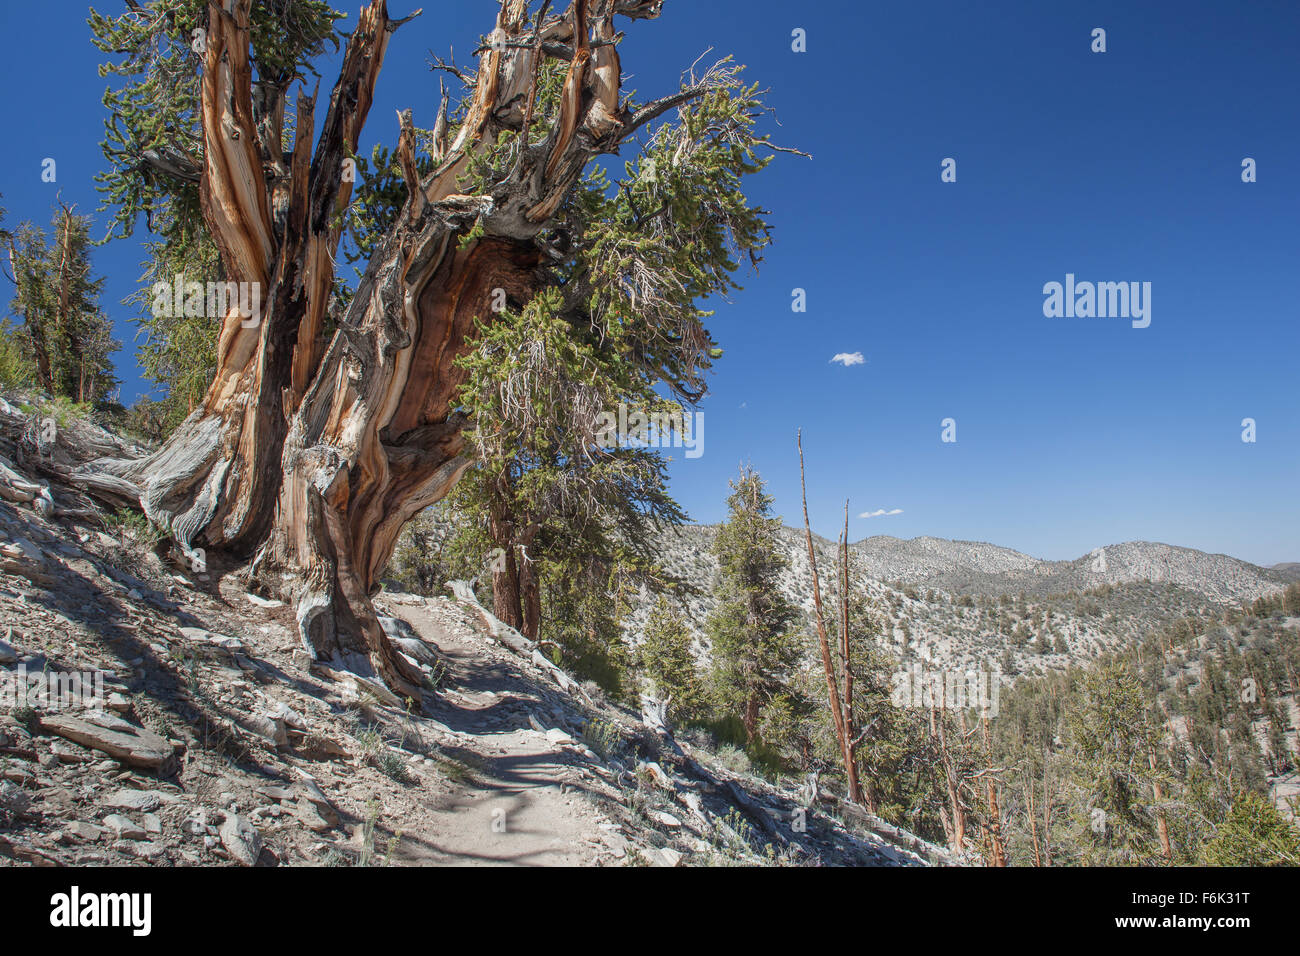 Gran pino bristlecone junto al camino. Antiguo bosque de pinos bristlecone, California, USA. Foto de stock